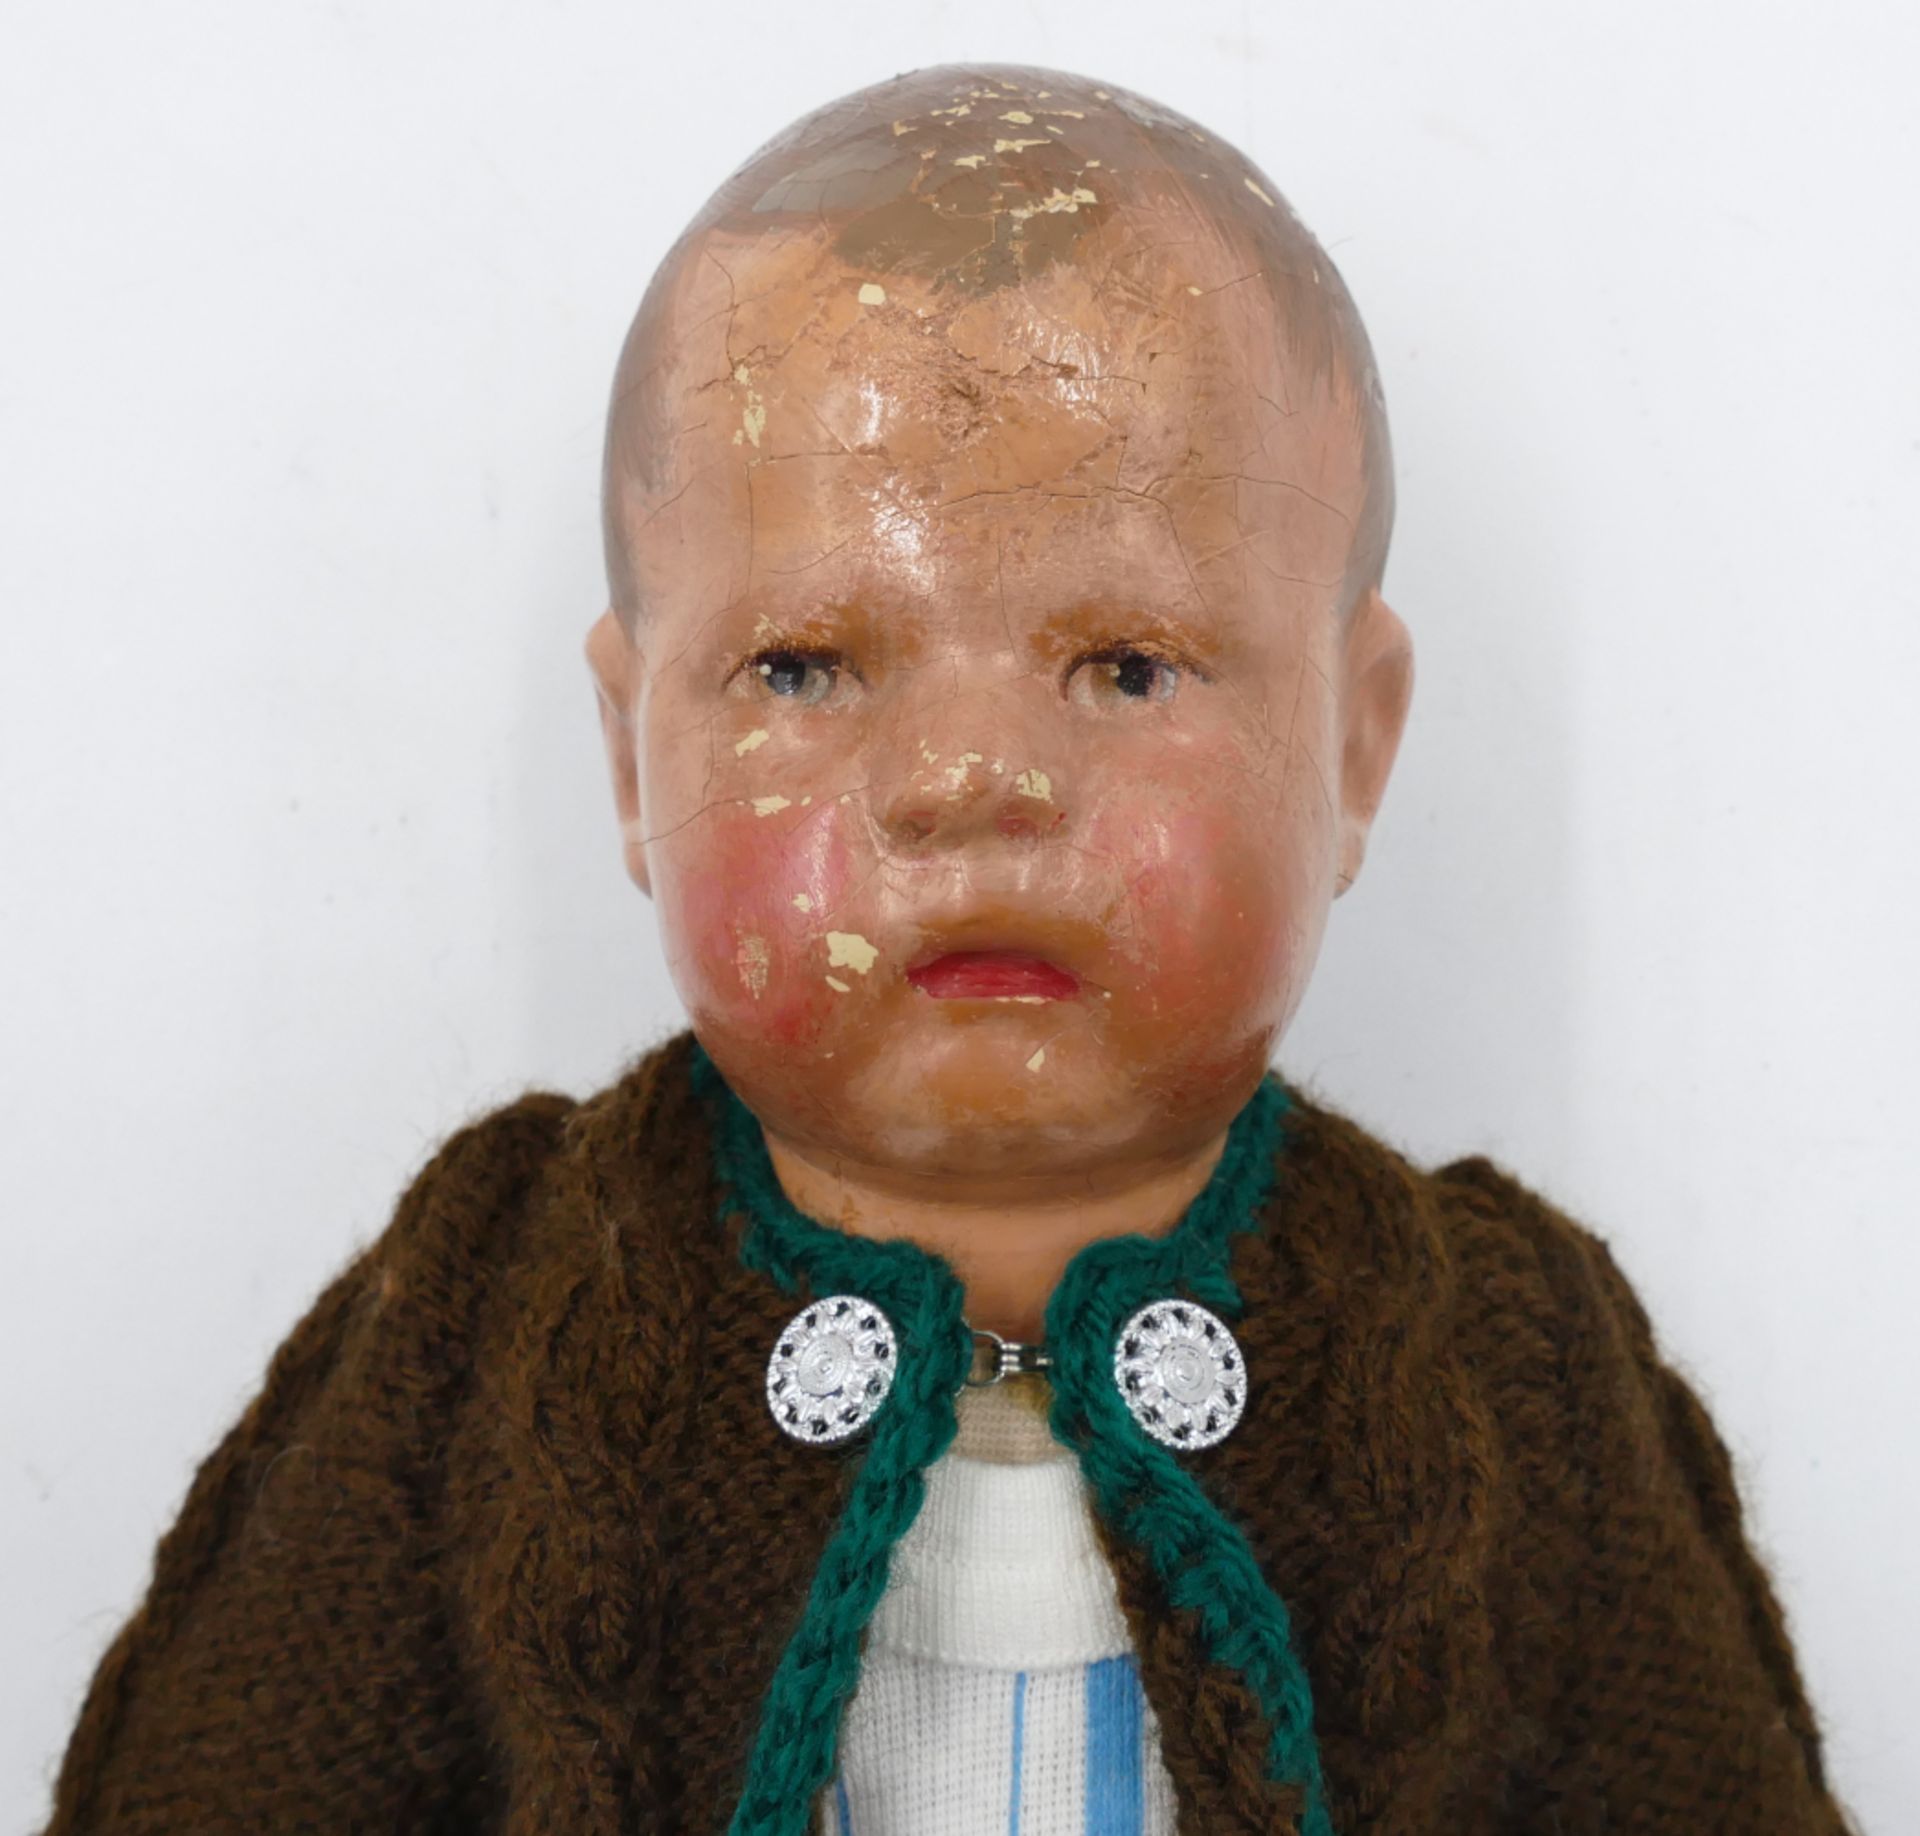 1 Puppe unbez./wohl Käthe KRUSE 1930er/1940er Jahre: Kopf bemalt, Stoffkörper mit beweglichen Armen - Bild 2 aus 3